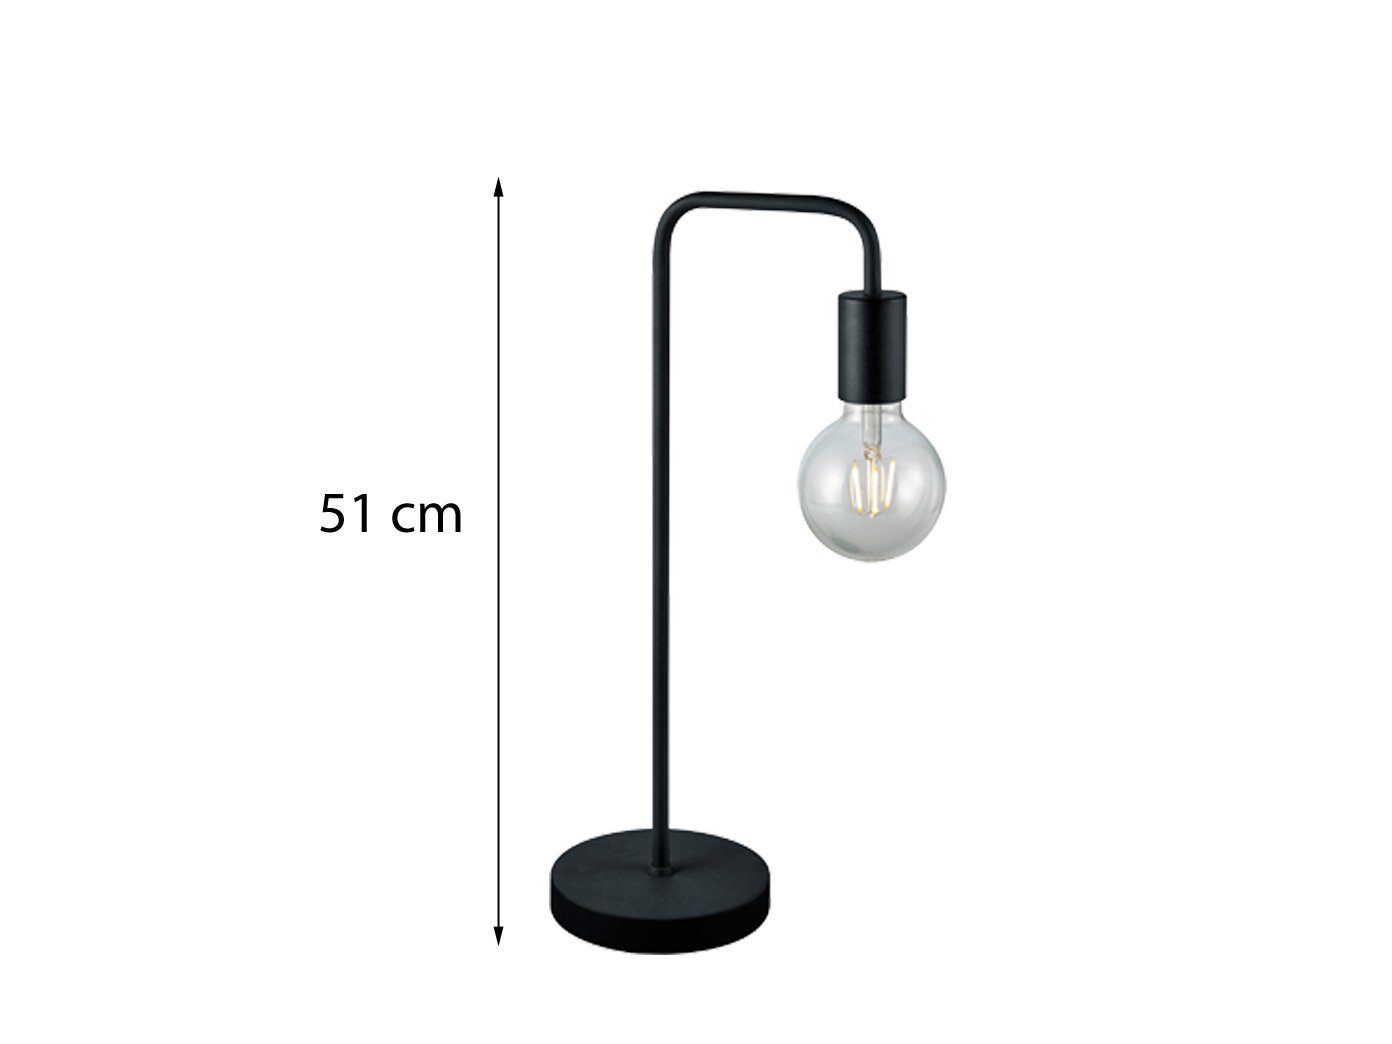 Warmweiß, LED Tischbeleuchtung meineWunschleuchte Schwarz 51cm ohne wechselbar, große Höhe außergewöhnlich Tischleuchte, Schirm, LED